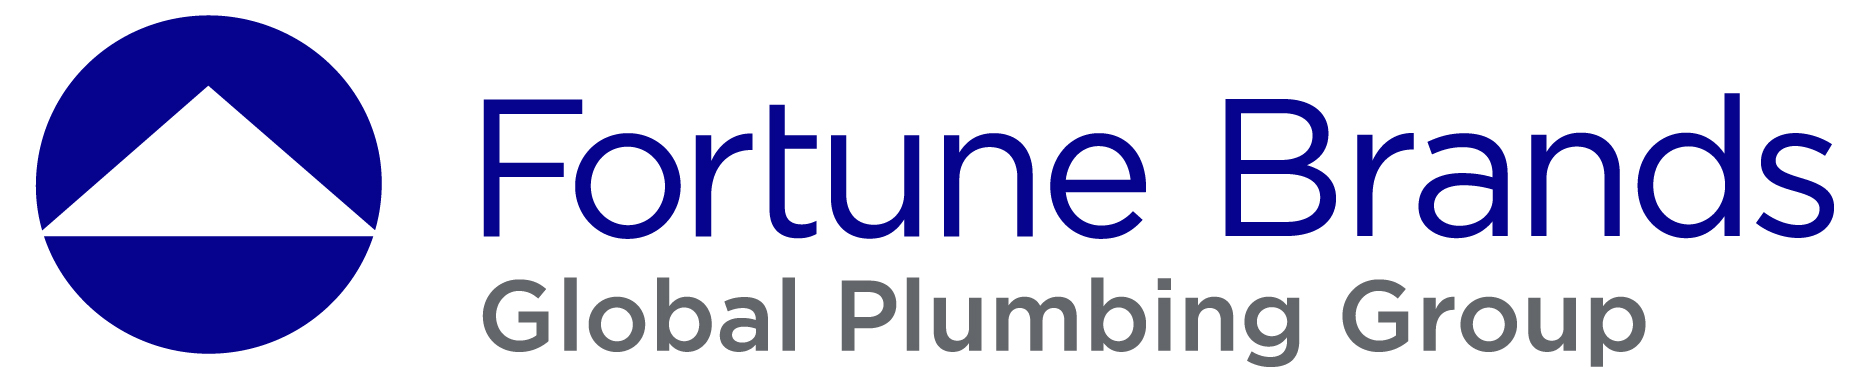 Global Plumbing Group logo